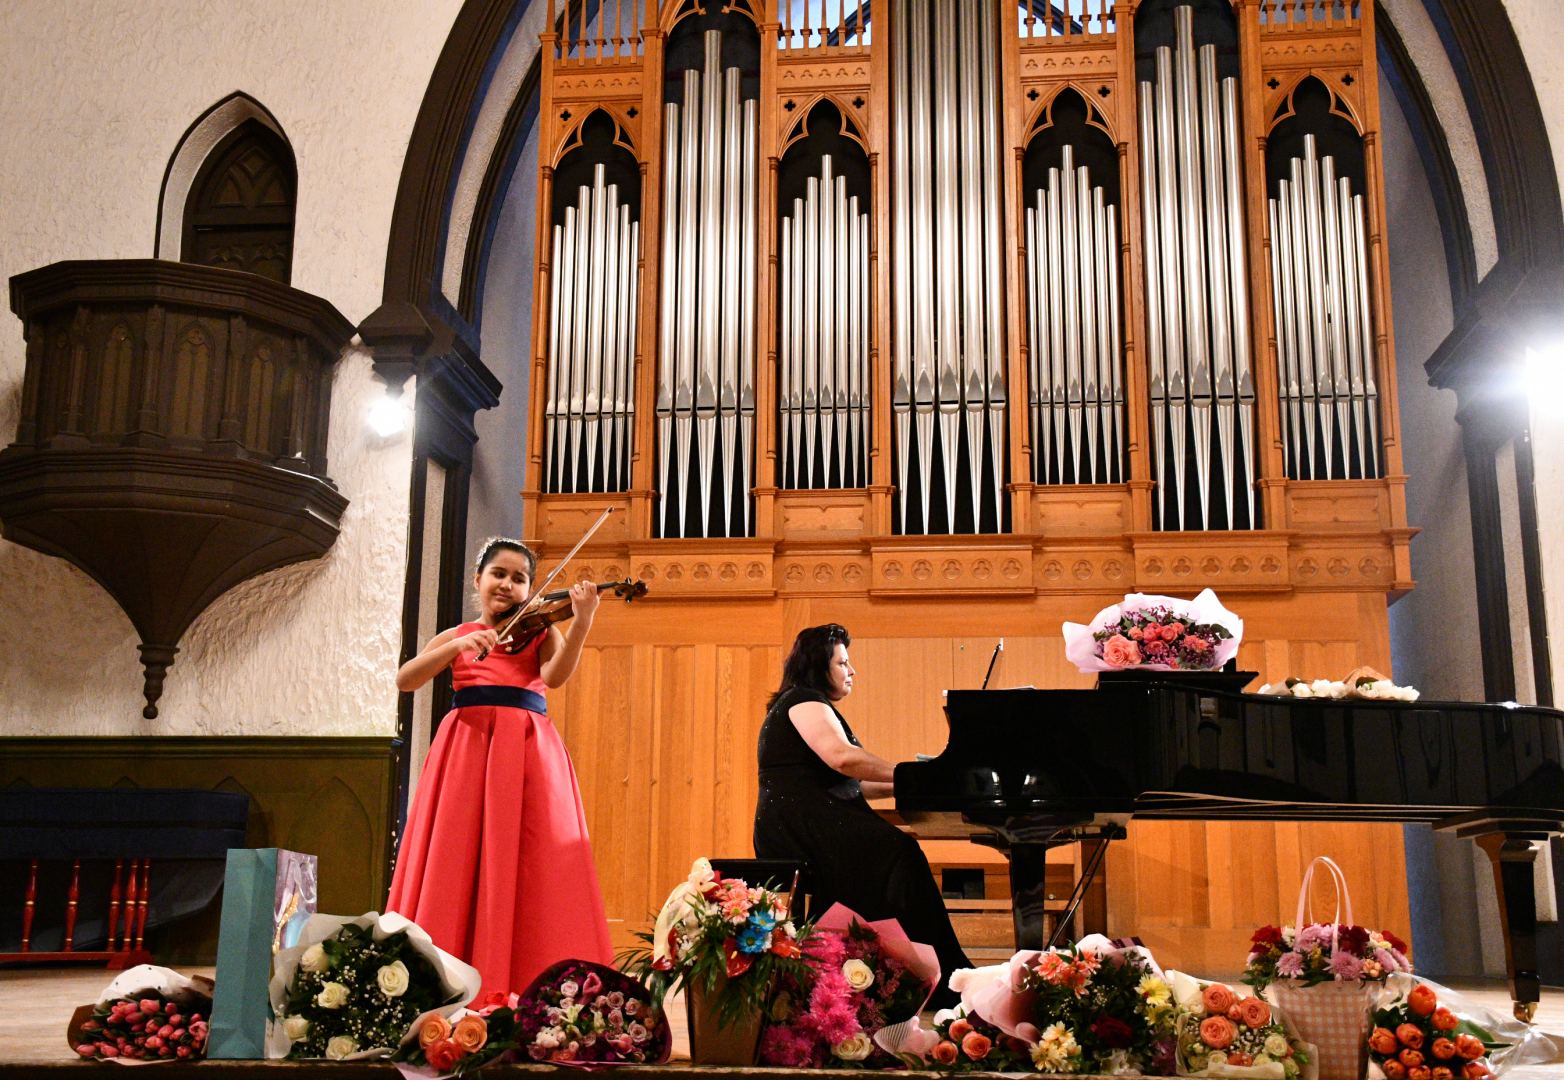 “Gənclərə dəstək” layihəsi çərçivəsində Elmira Dadaşovanın solo konserti olub (FOTO)